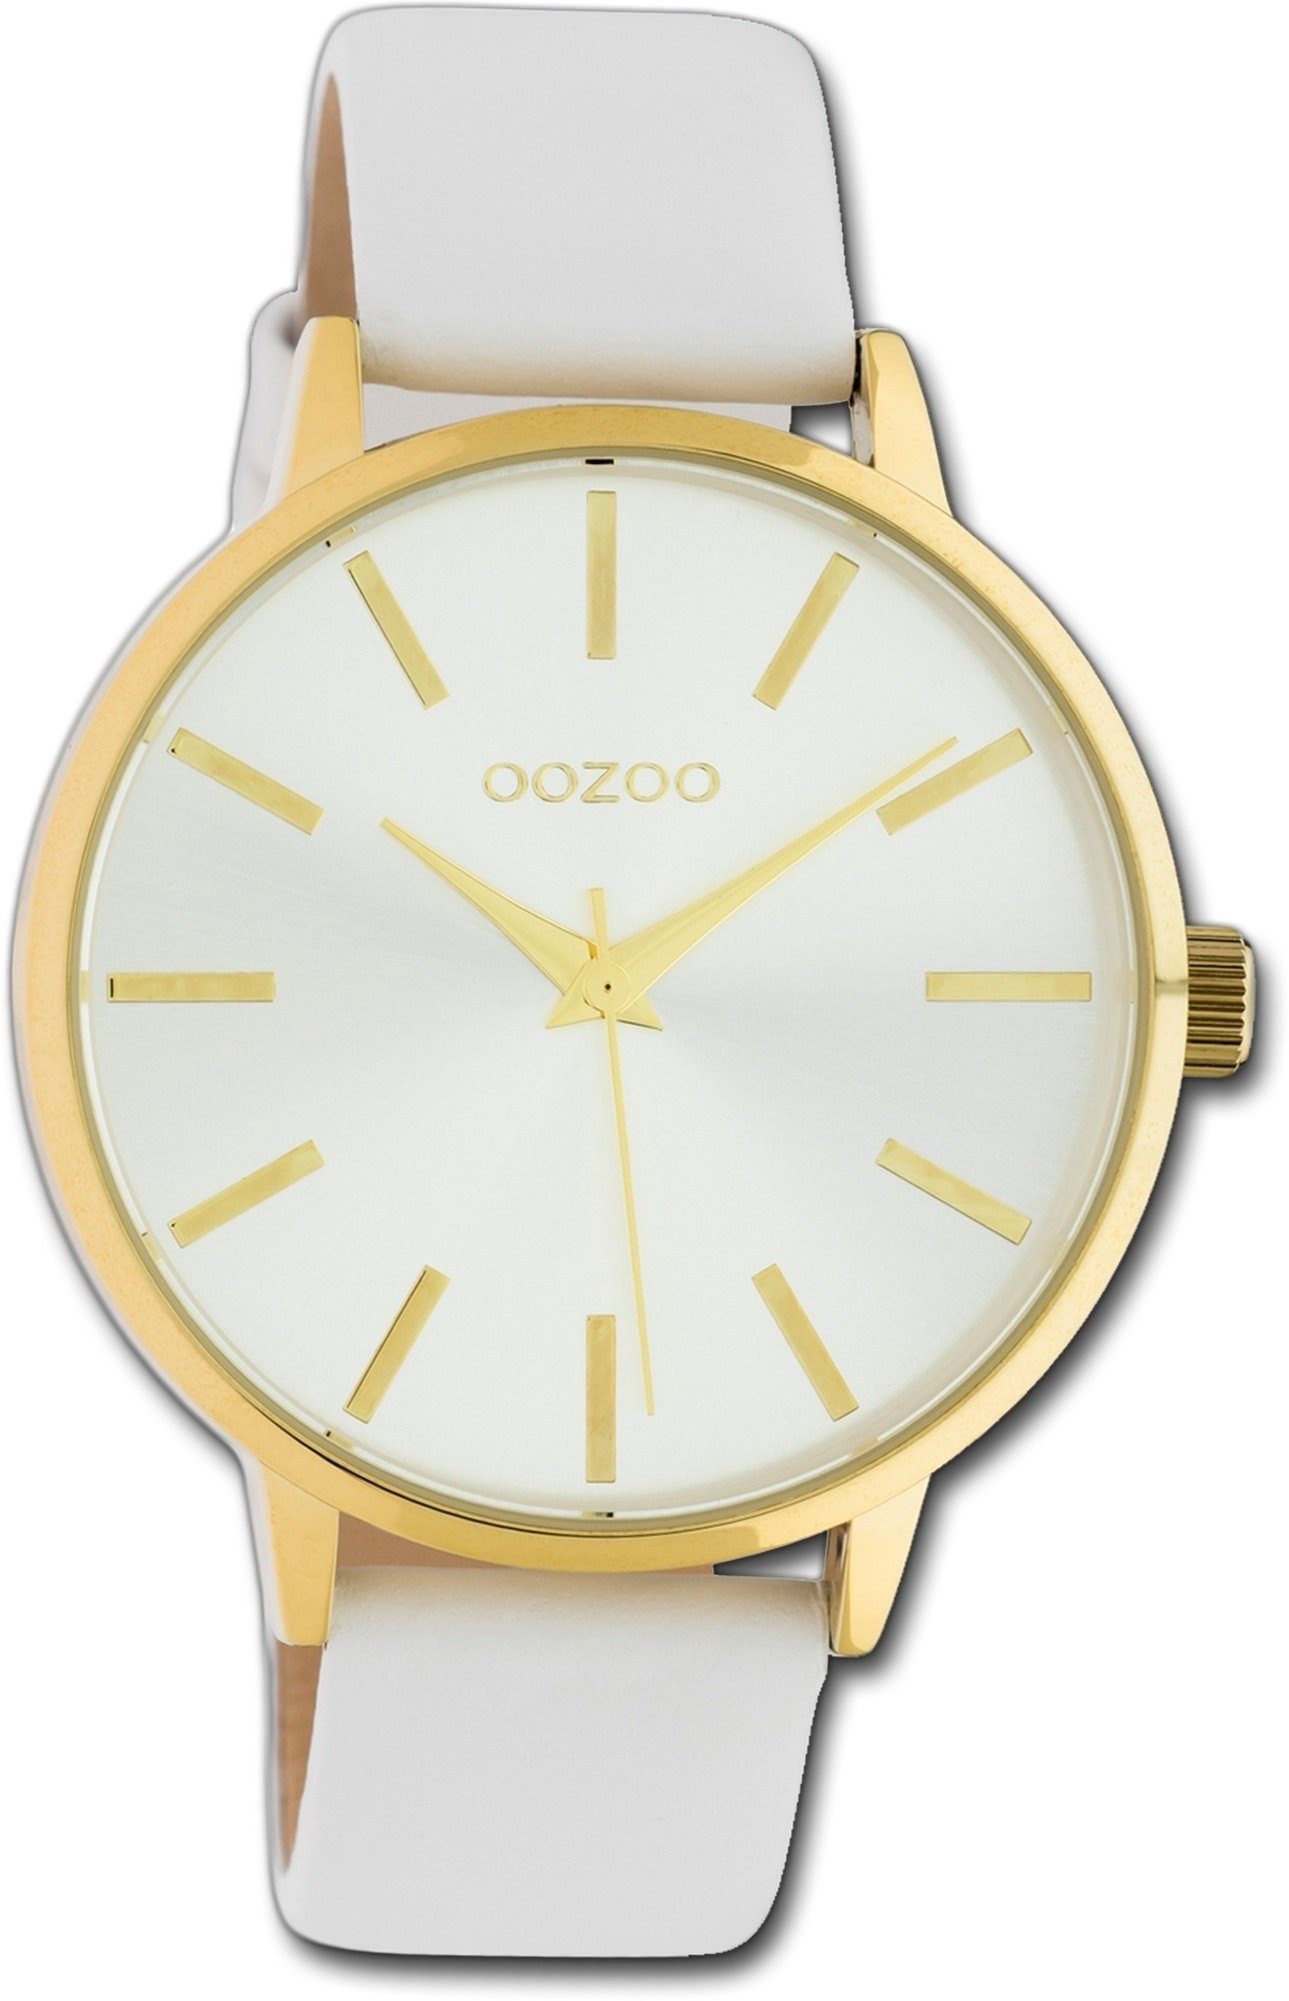 OOZOO Quarzuhr Oozoo Leder Damen Uhr C10611 Analog, Damenuhr Lederarmband weiß, rundes Gehäuse, groß (ca. 42mm)